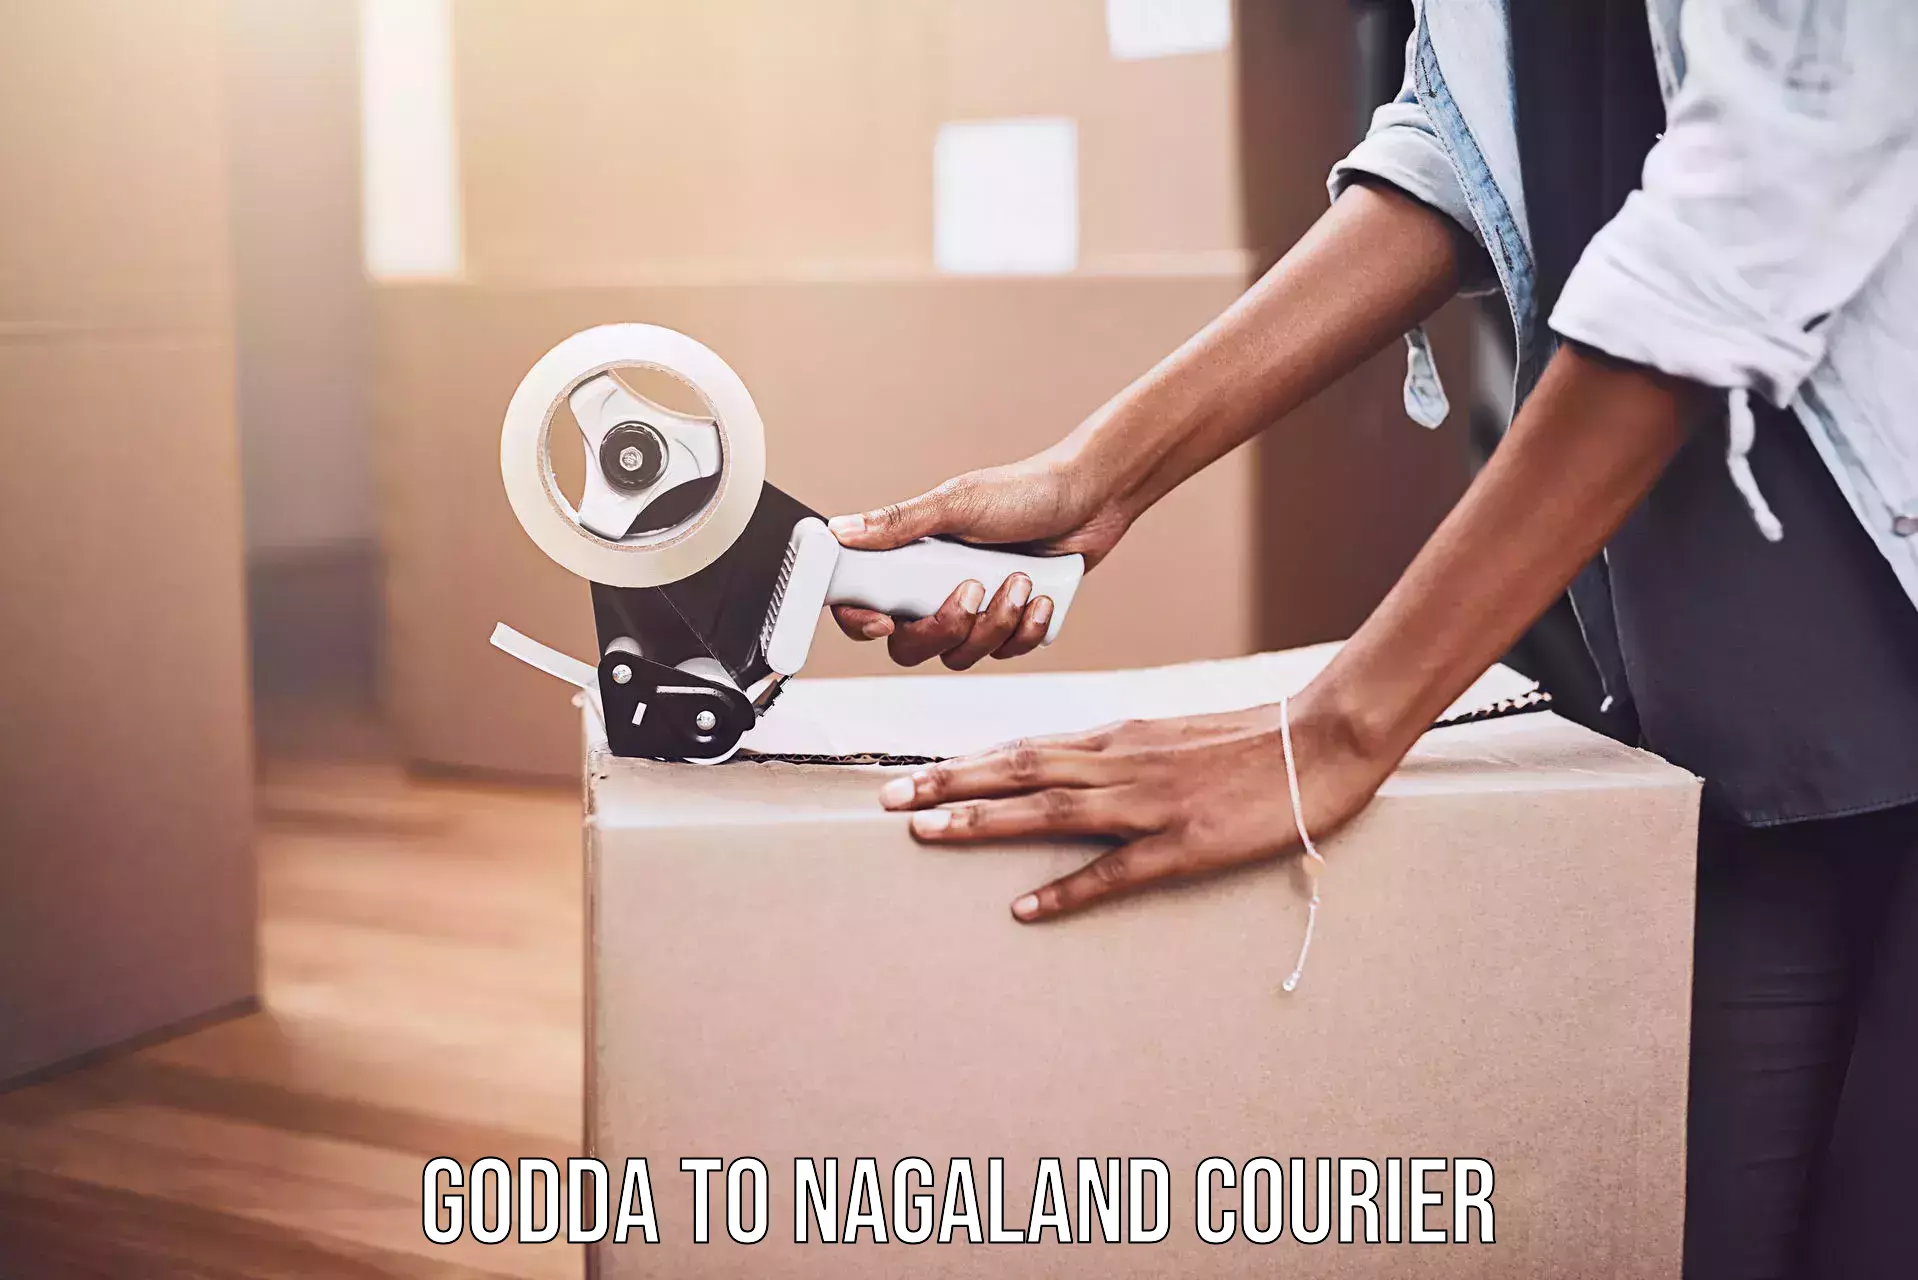 Affordable parcel service Godda to Longleng